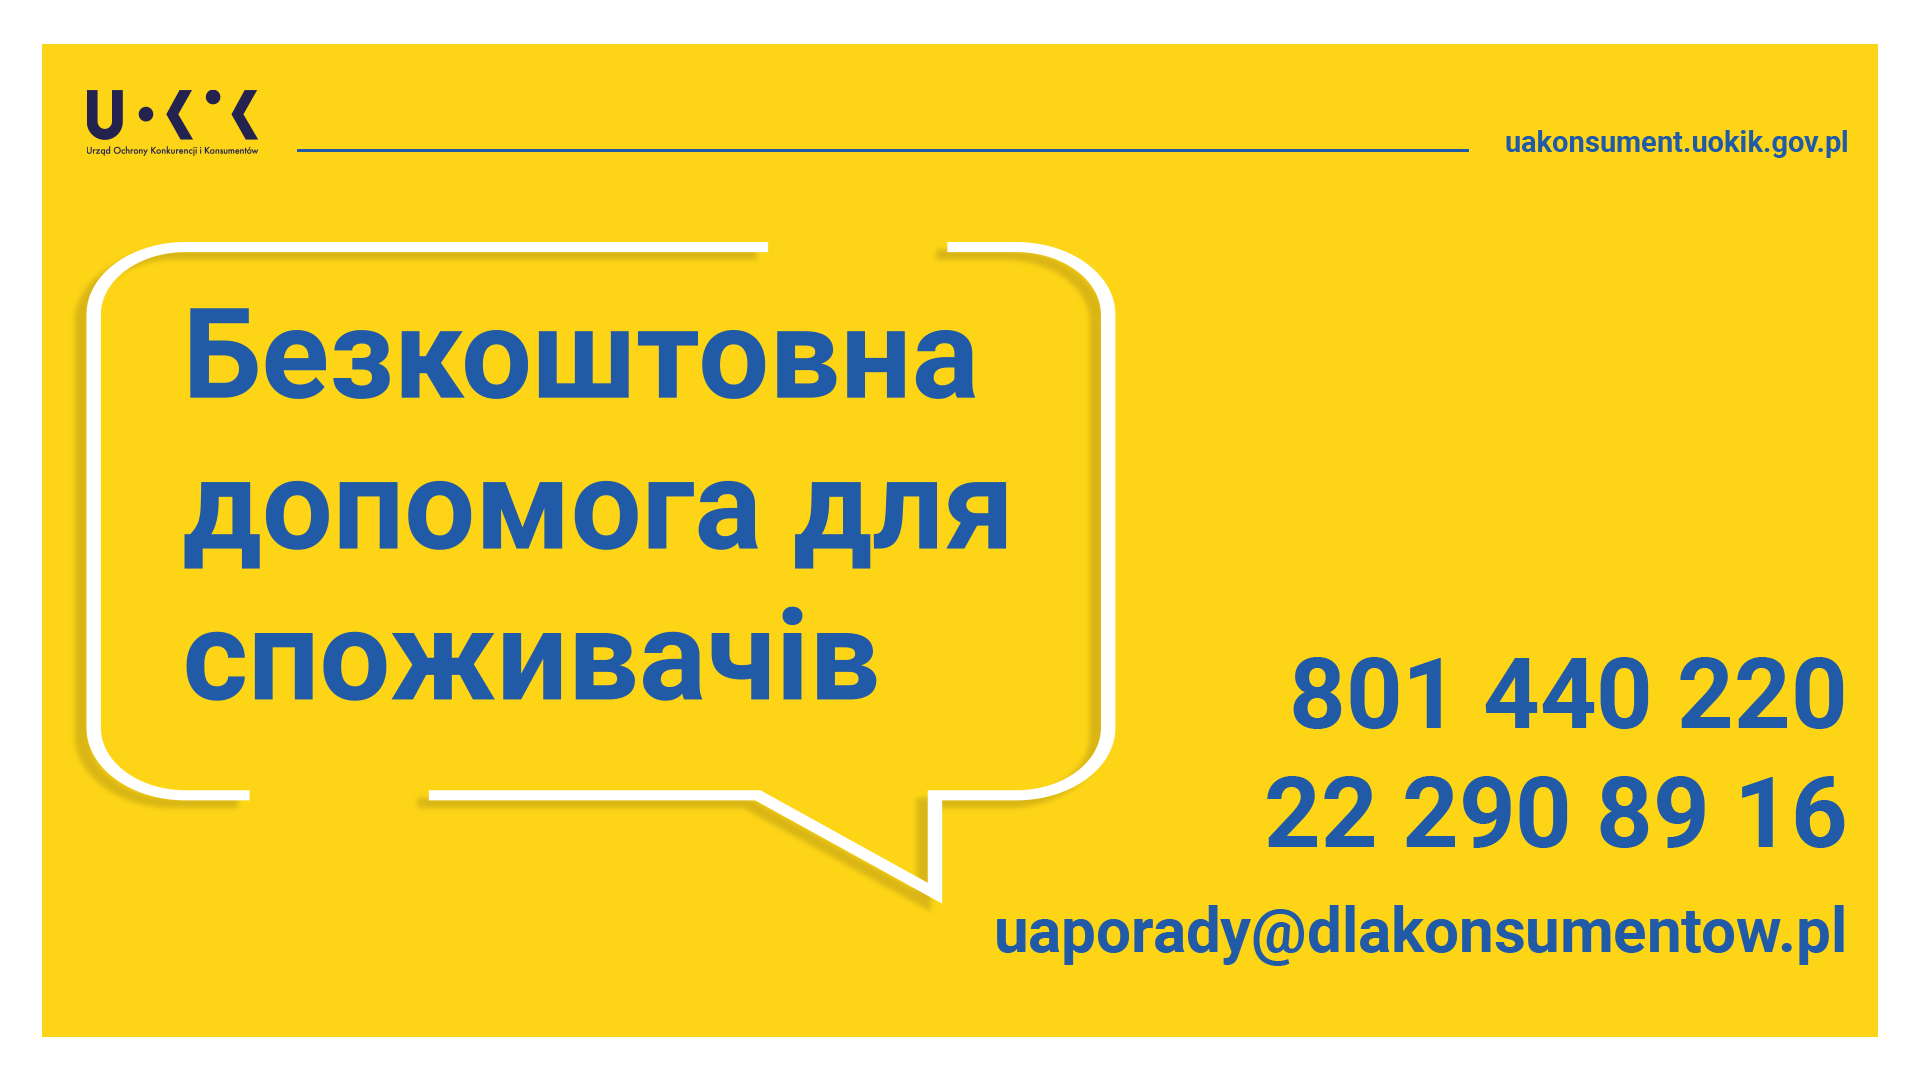 Grafika przedstawia informację w języku ukraińskim o bezpłatnej infolinii konsumenckiej